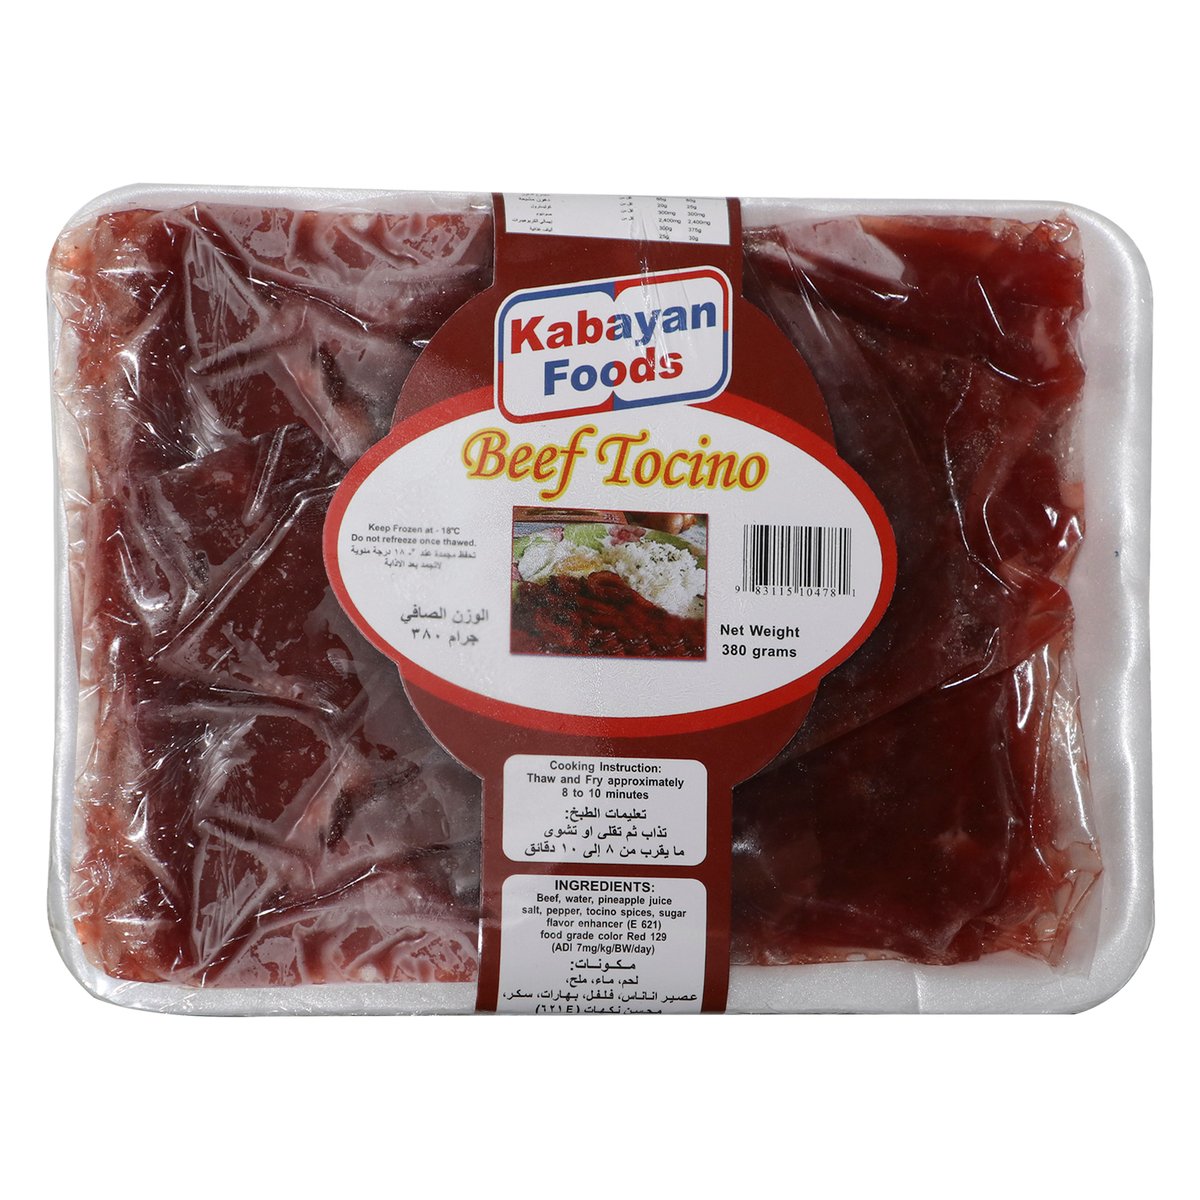 Kabayan Foods Beef Tocino 380g